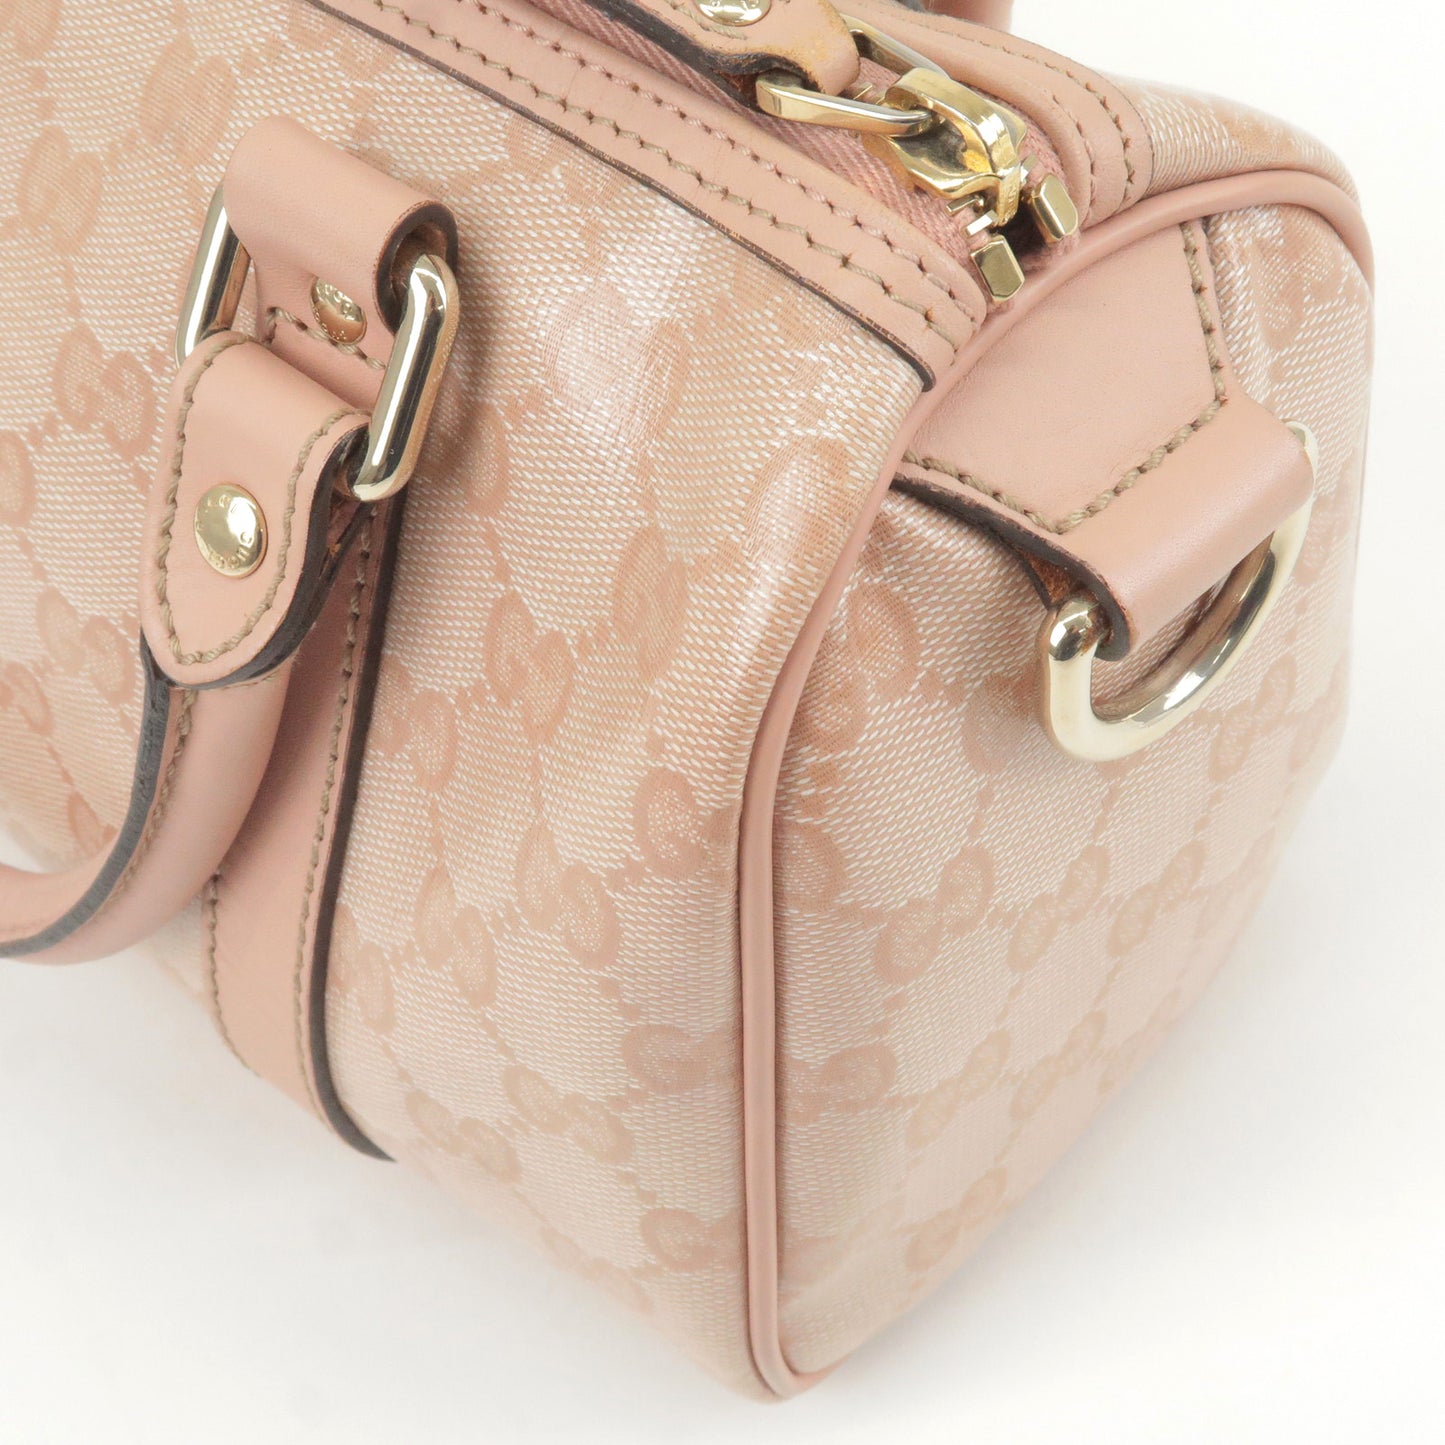 GUCCI GG Crystal Leather Boston Bag Hand Bag Pink 193604